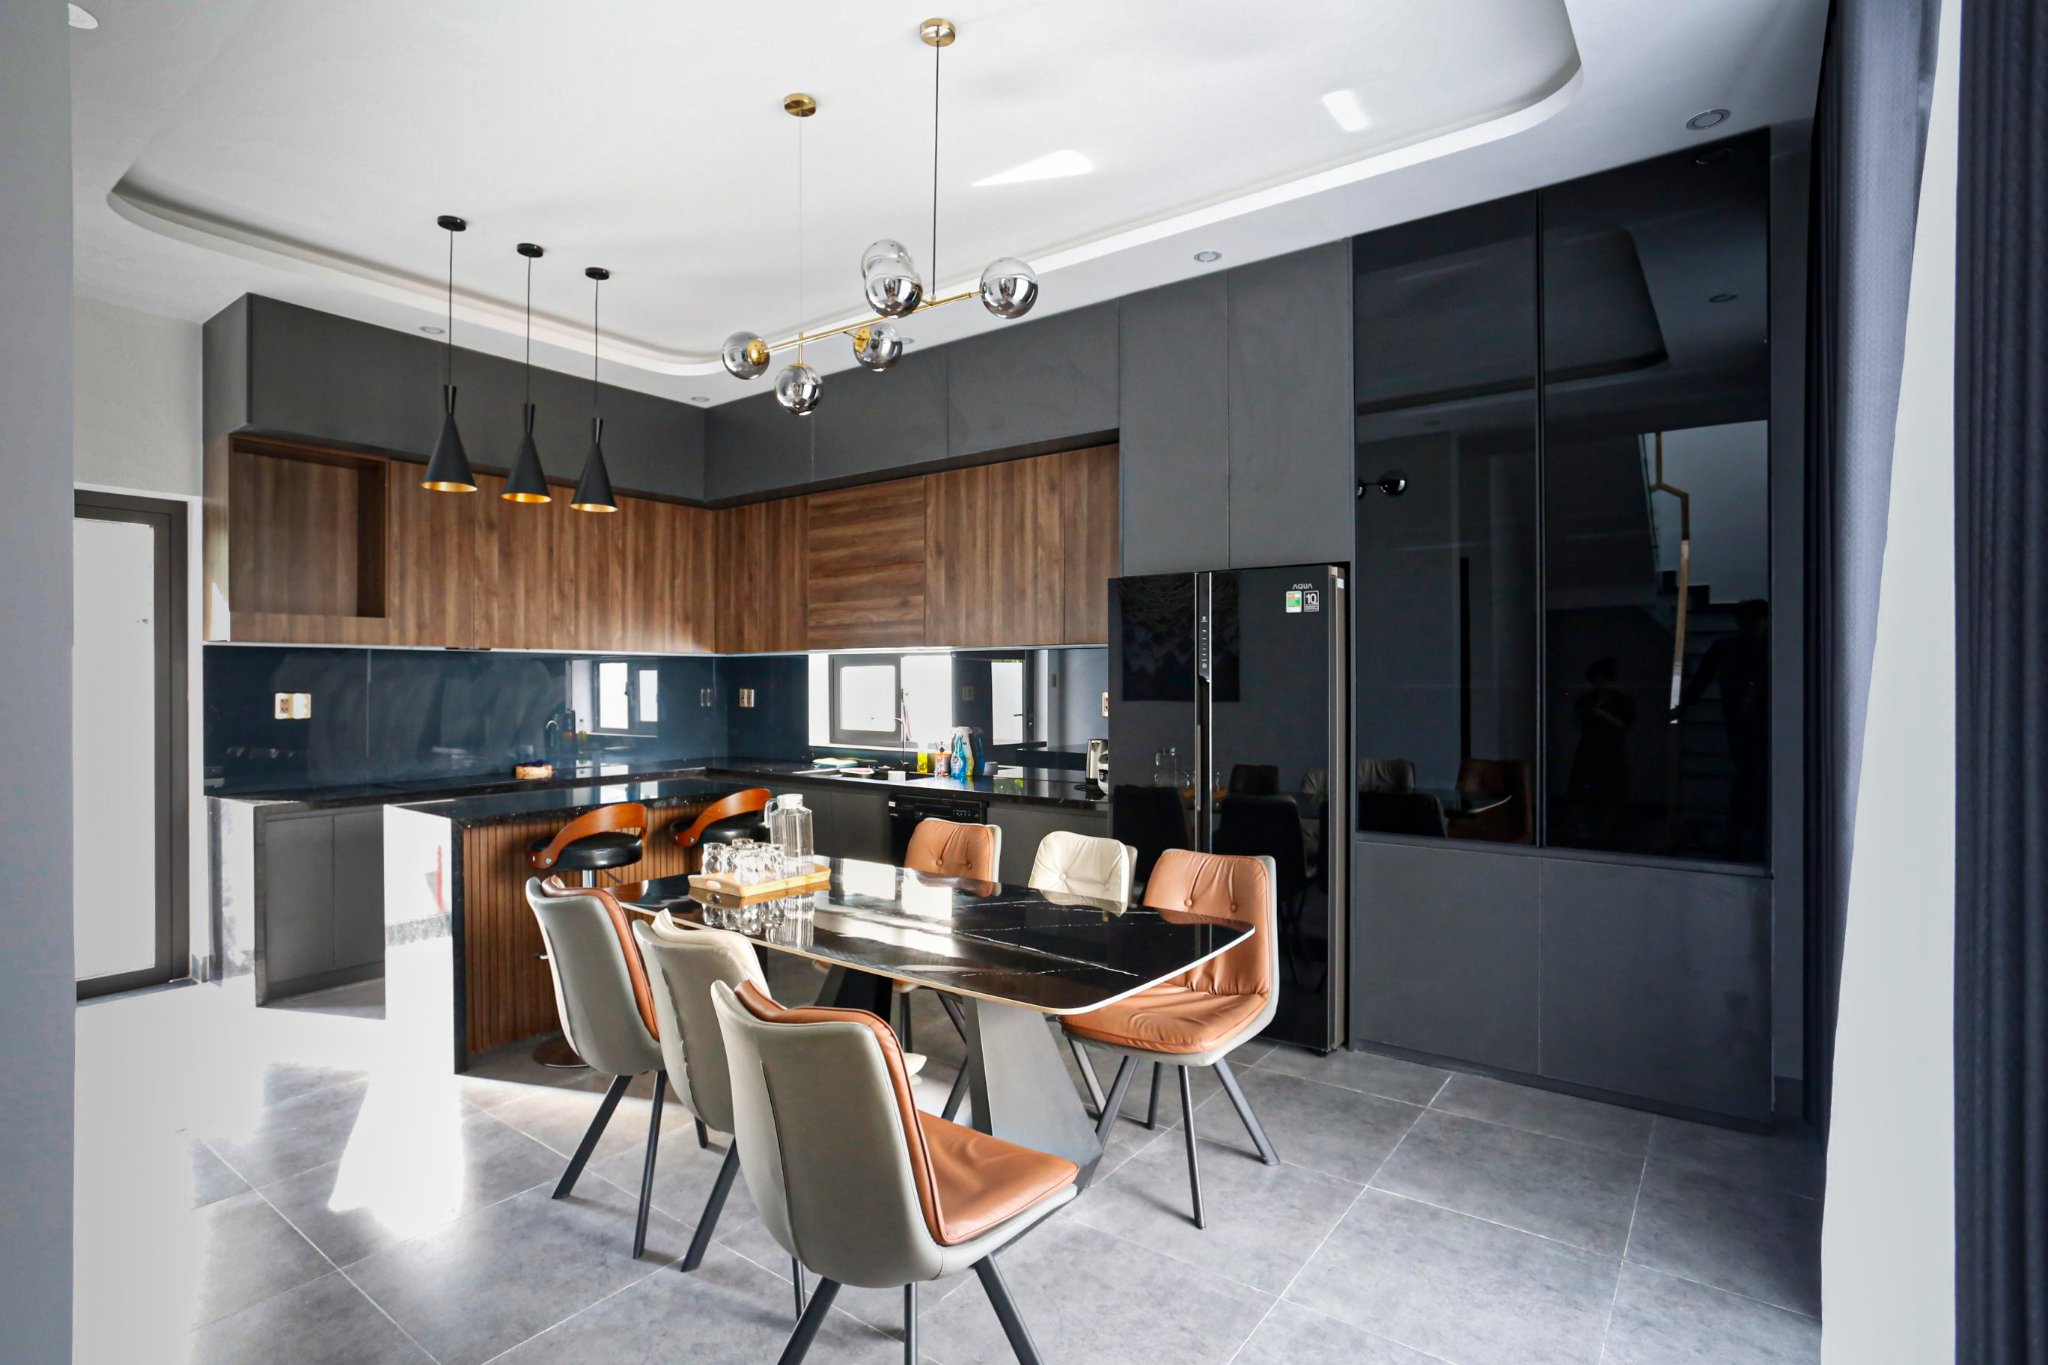 Thi công cải tạo nhà ở, thiết kế và lắp đặt hoàn thiện nội thất căn hộ tại Hưng Yên